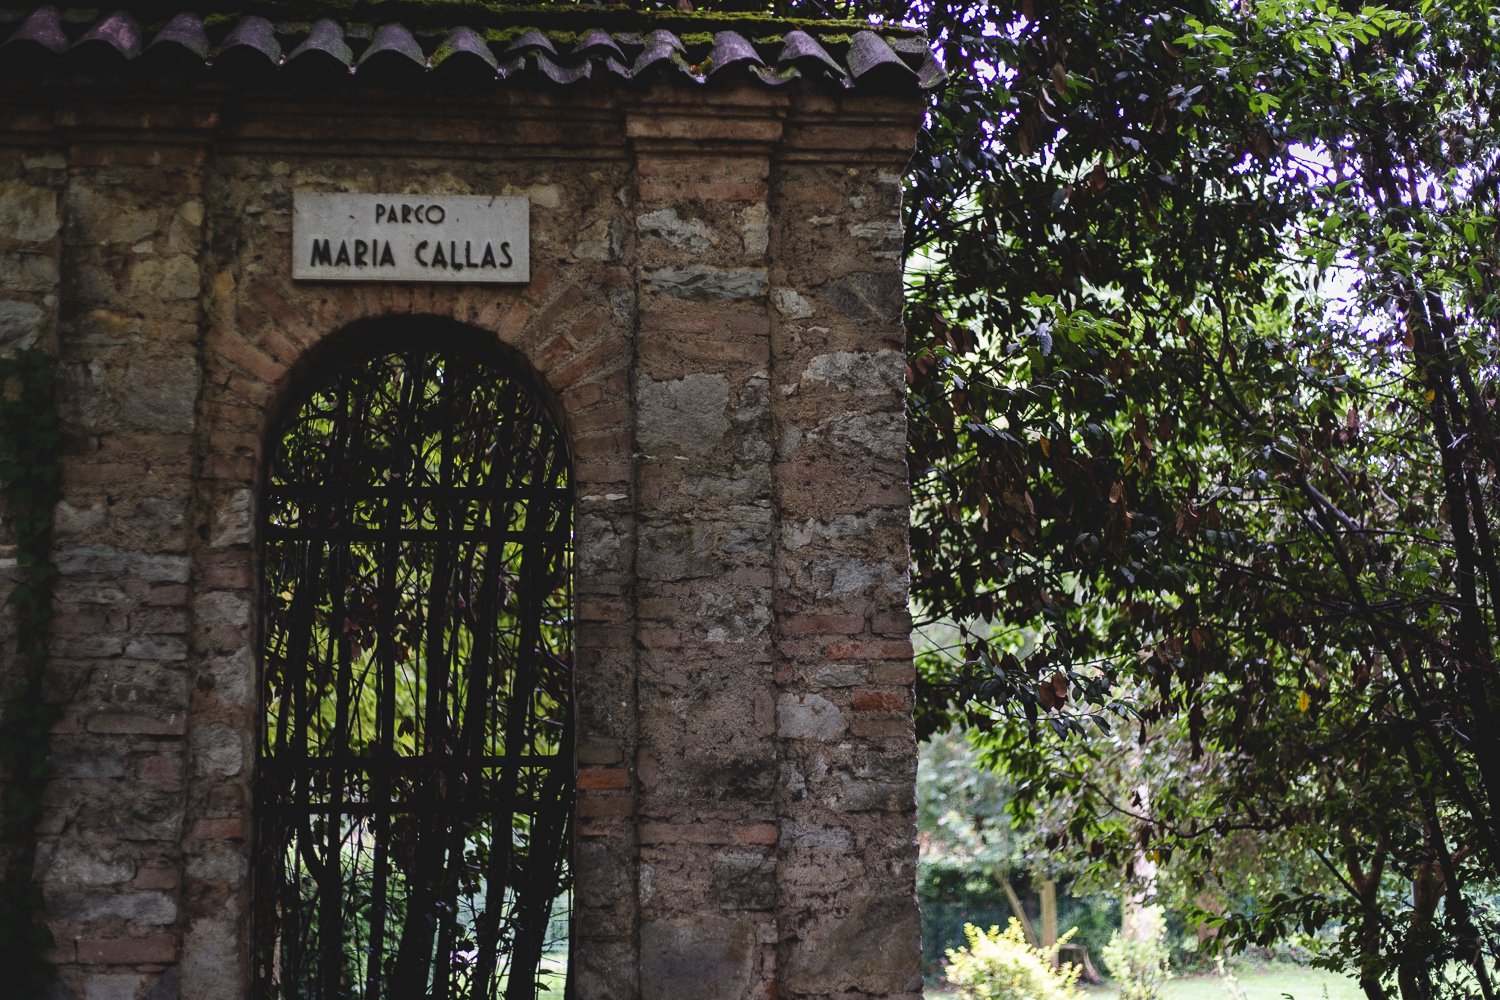 Un mur avec un panneau indiquant "Parco Maria Callas"